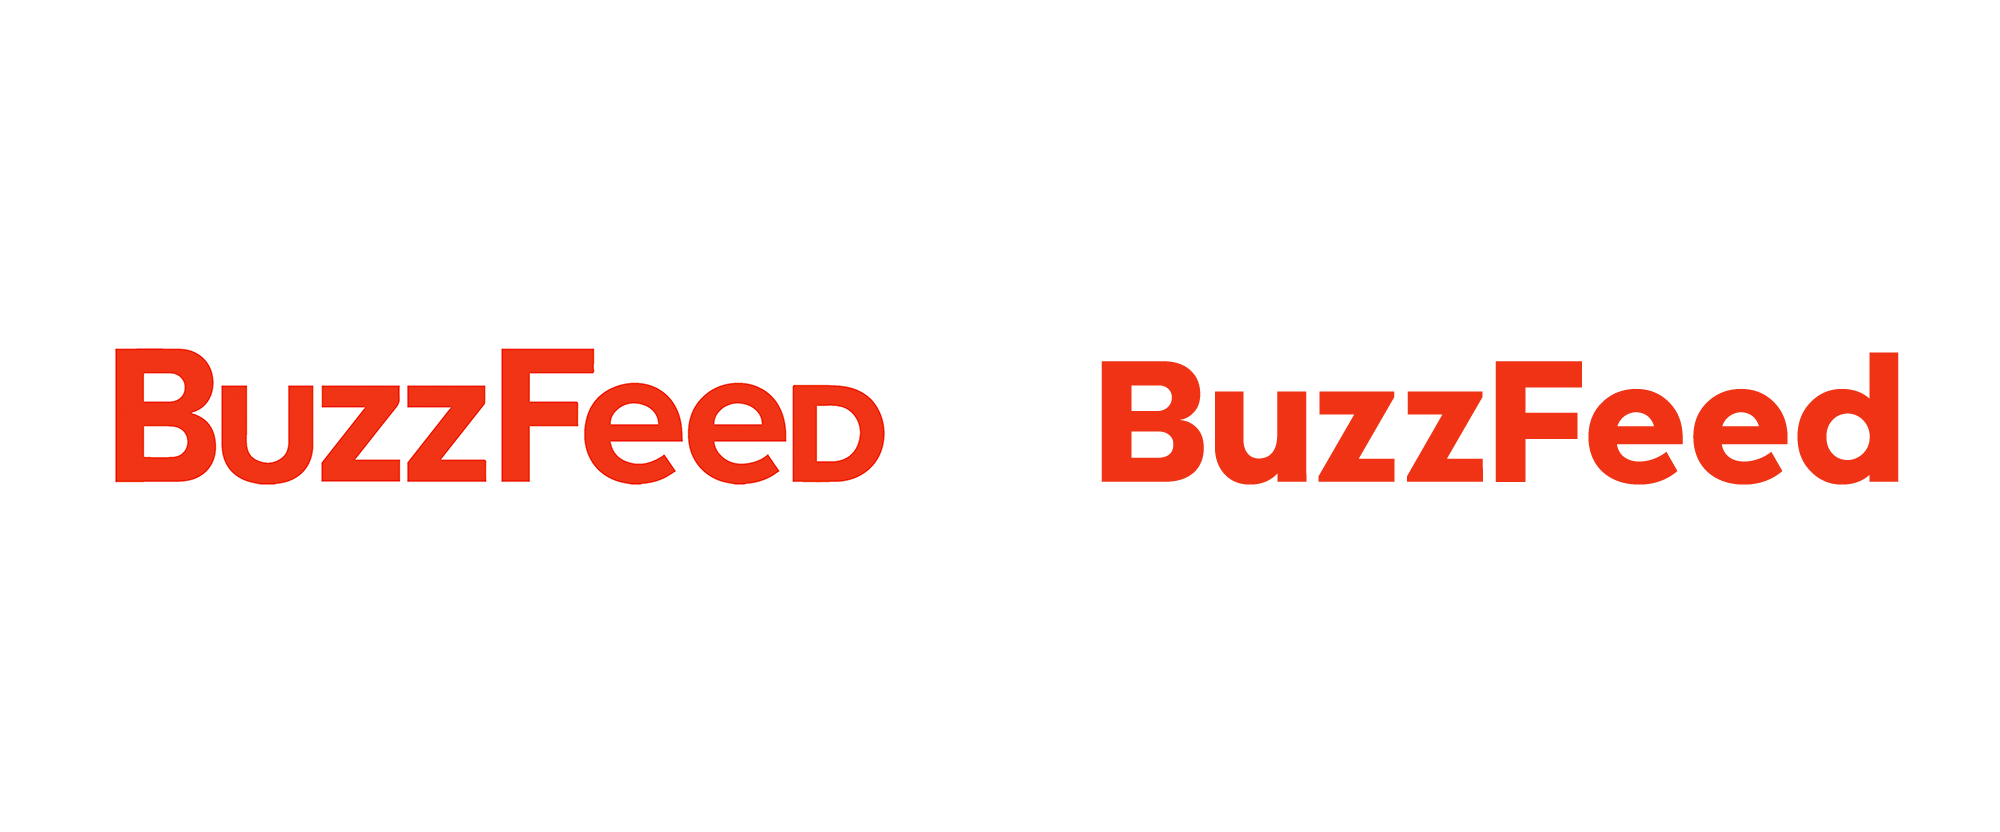 Buzzfeed Videos